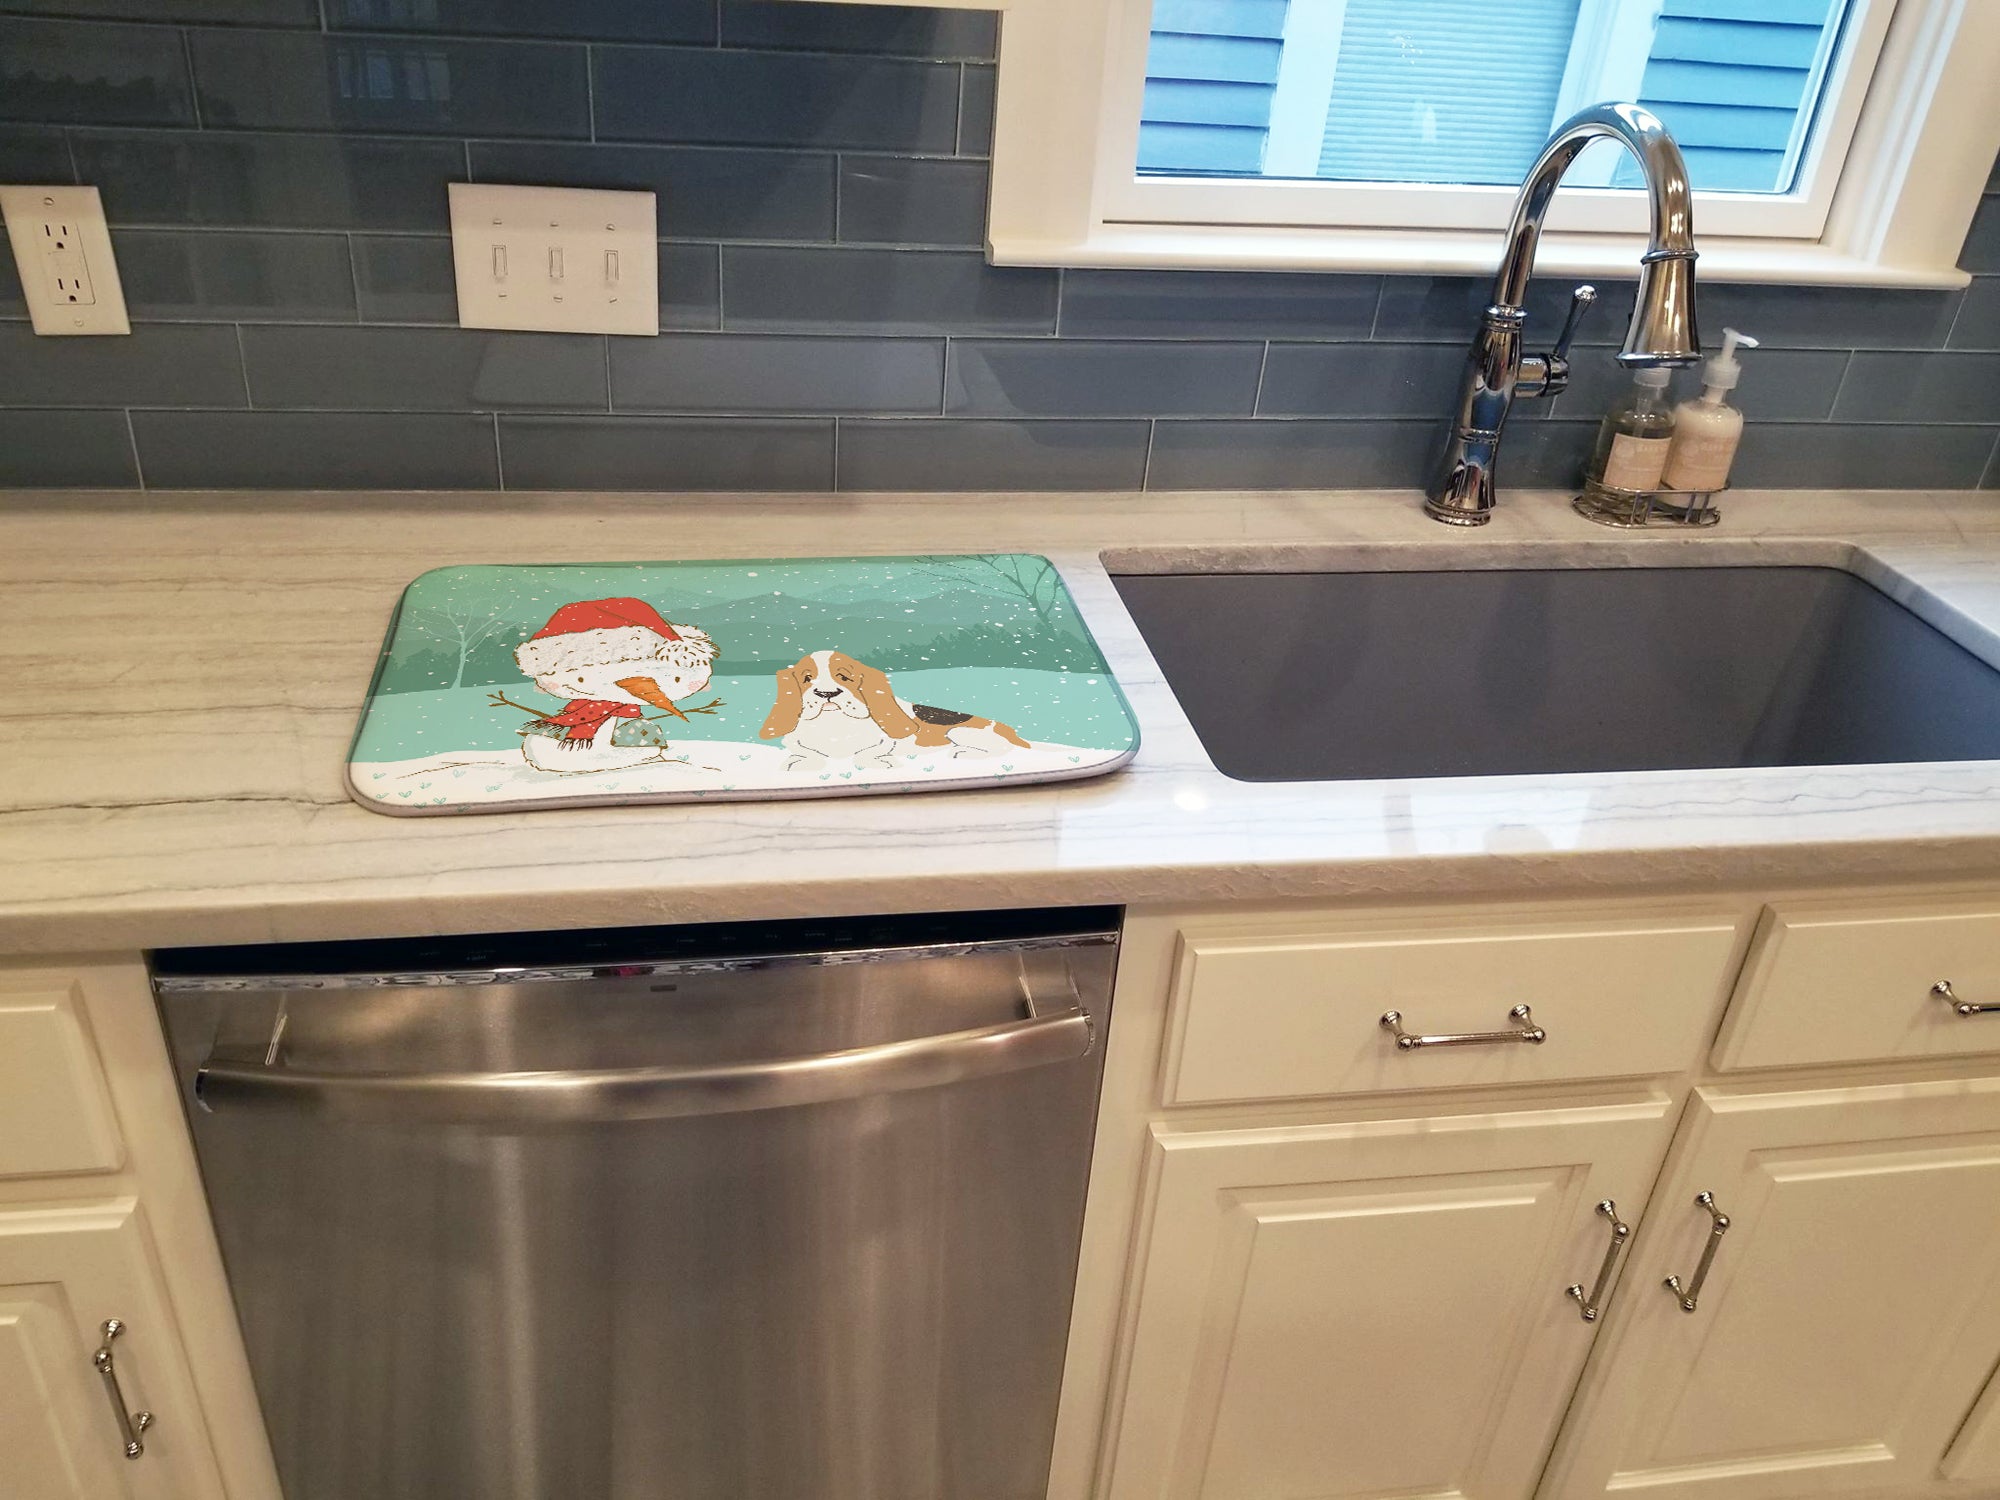 Basset Hound Snowman Christmas Dish Drying Mat CK2051DDM